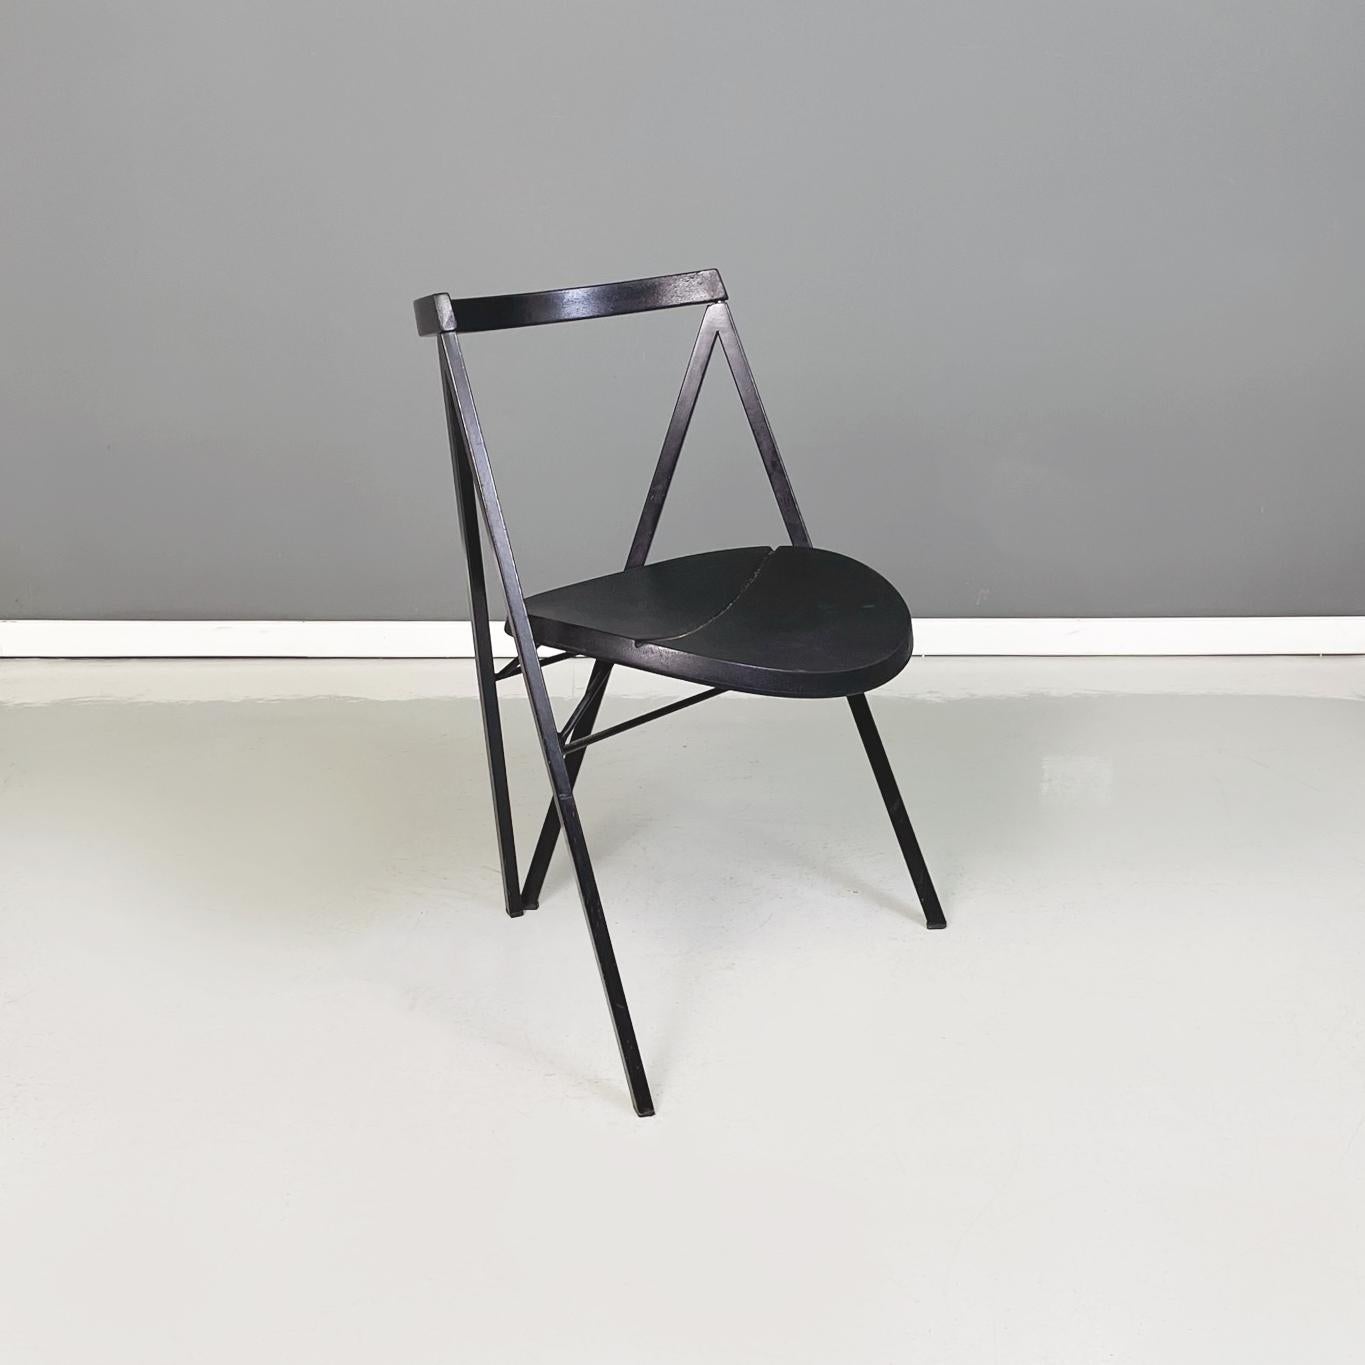 Chaise ronde italienne moderne en métal noir et caoutchouc de Zeus, années 1990
Chaise avec assise ronde en caoutchouc noir. La structure a une section carrée en métal peint en noir mat. Le dossier incurvé est recouvert d'un revêtement en caoutchouc